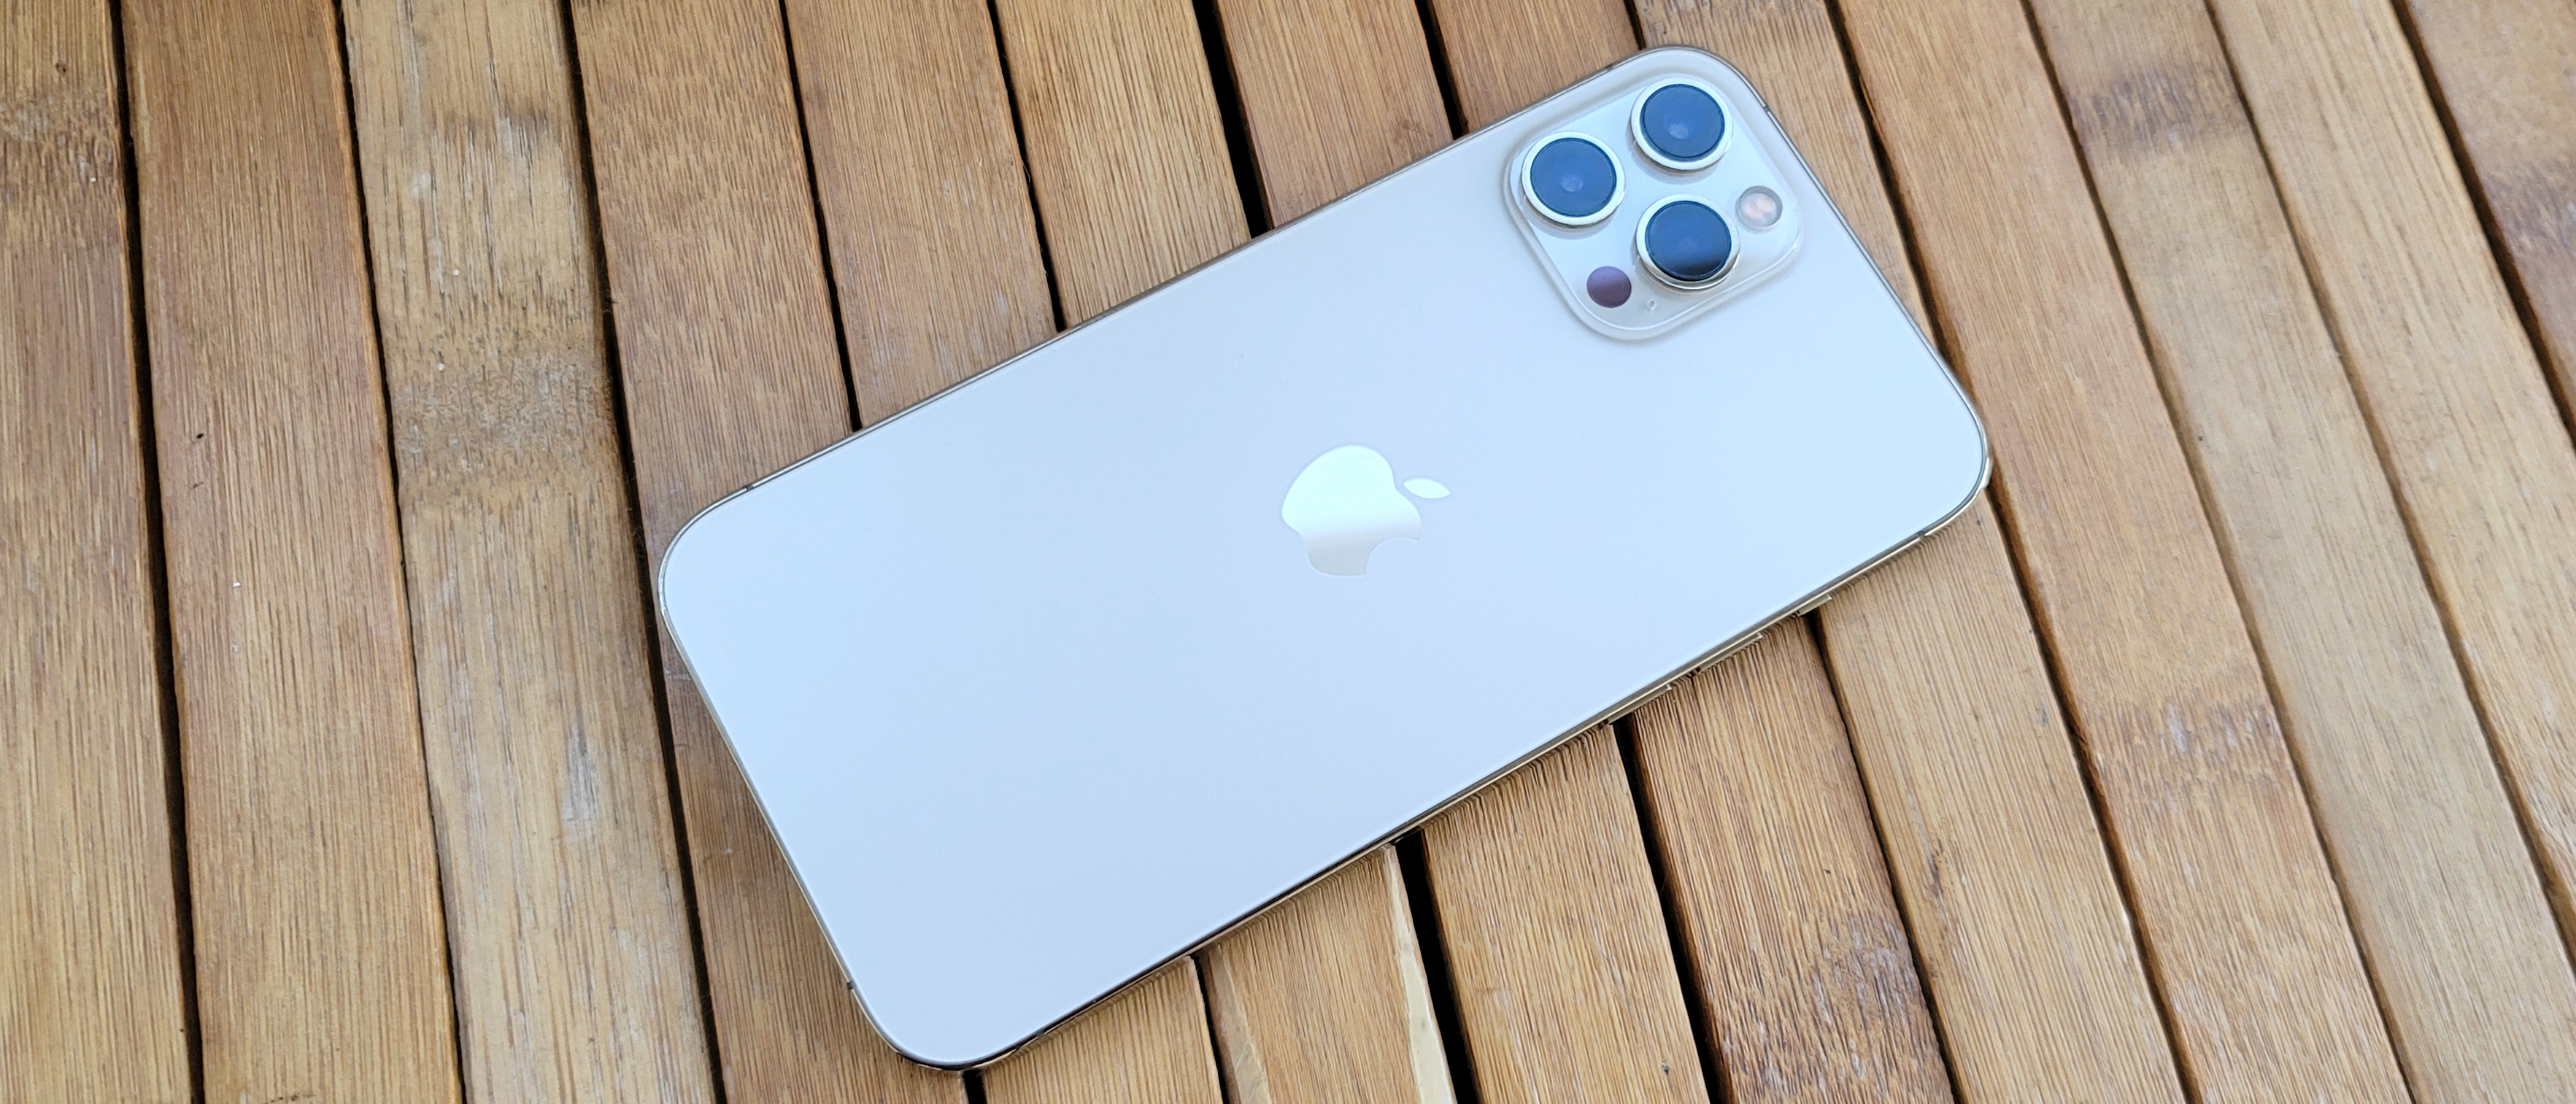 iPhone 12 Pro Max review: Max display, max battery, max camera